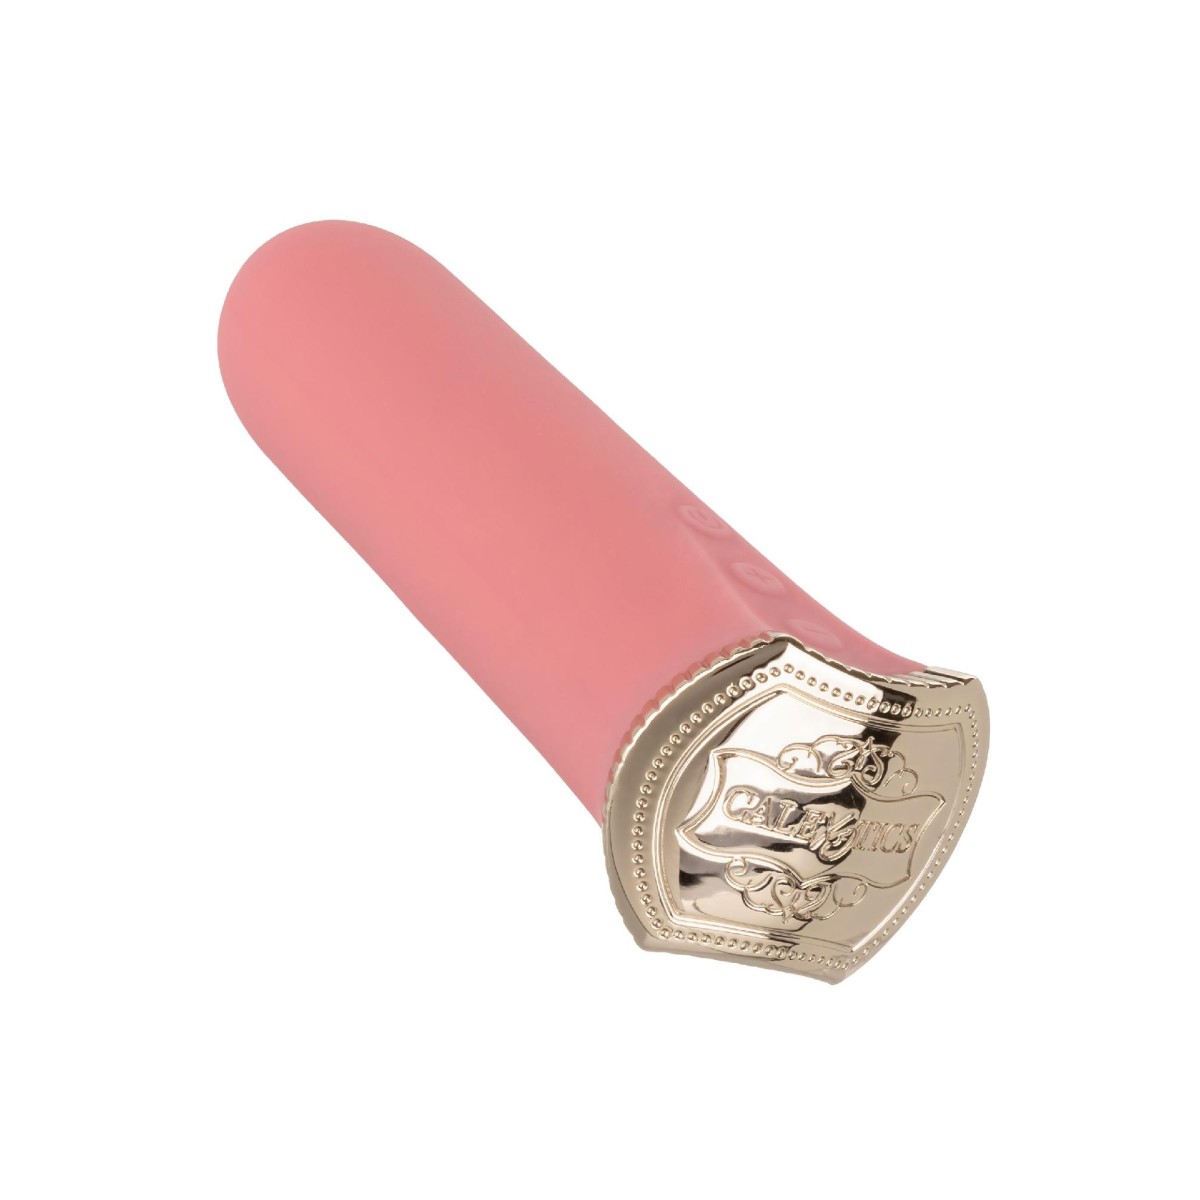 Vibratore vaginale in silicone Uncorked Rosé